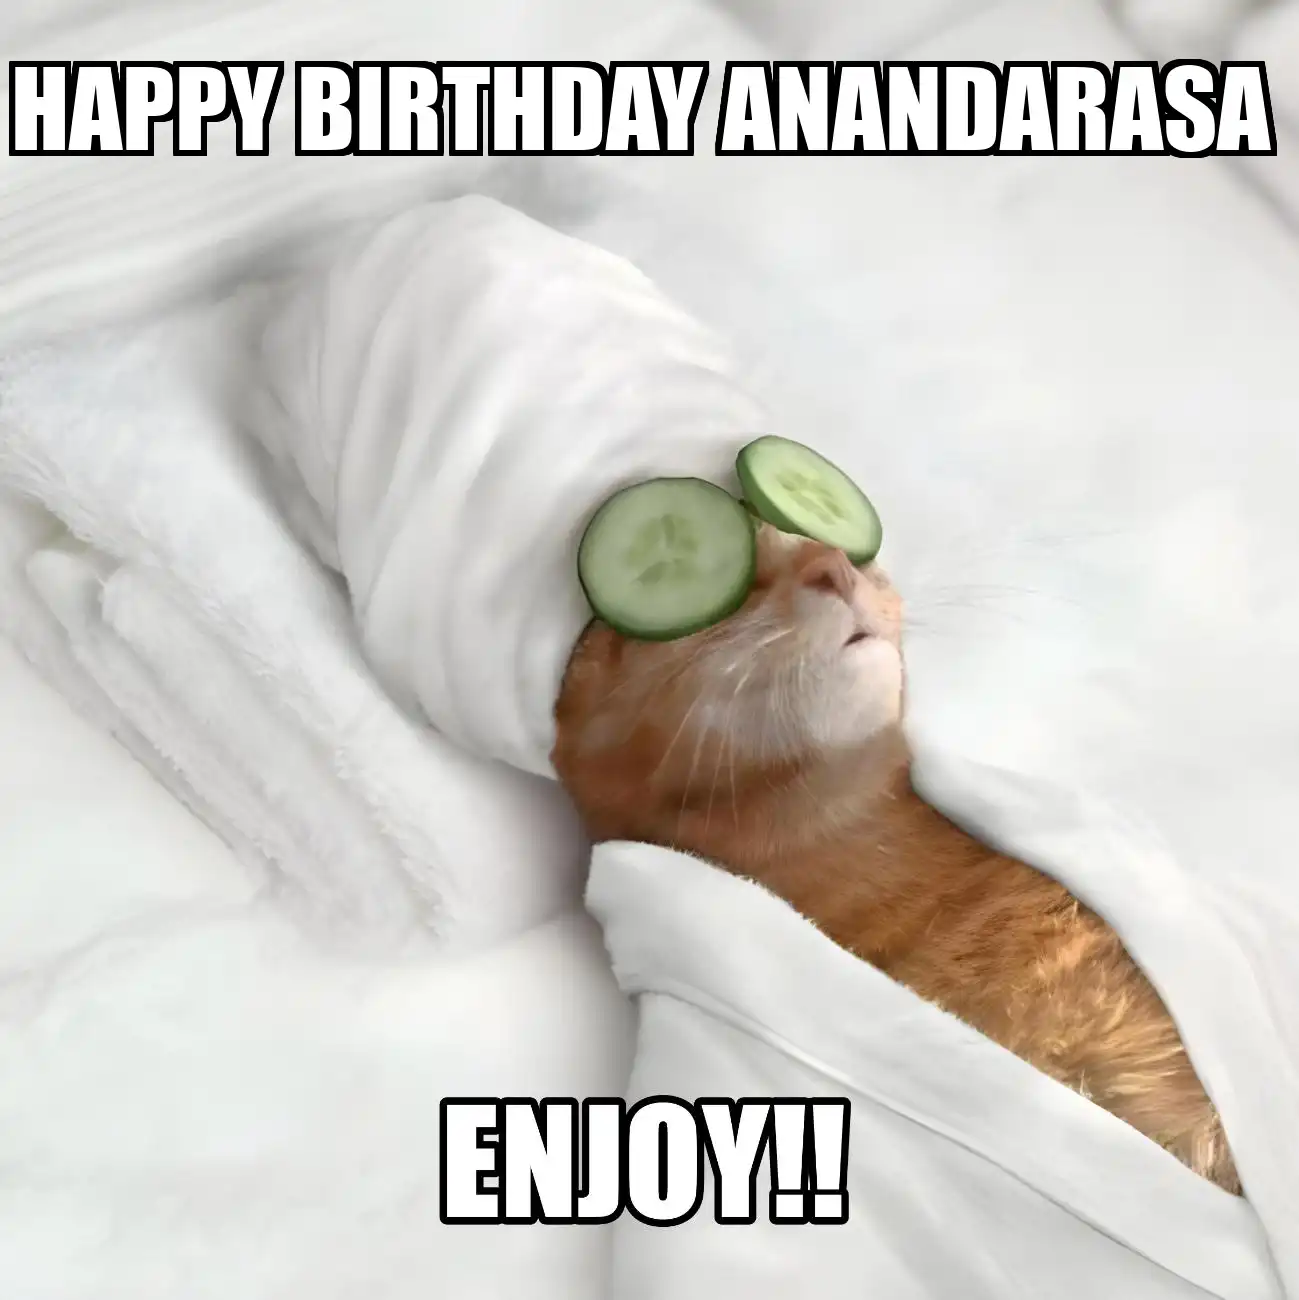 Happy Birthday Anandarasa Enjoy Cat Meme